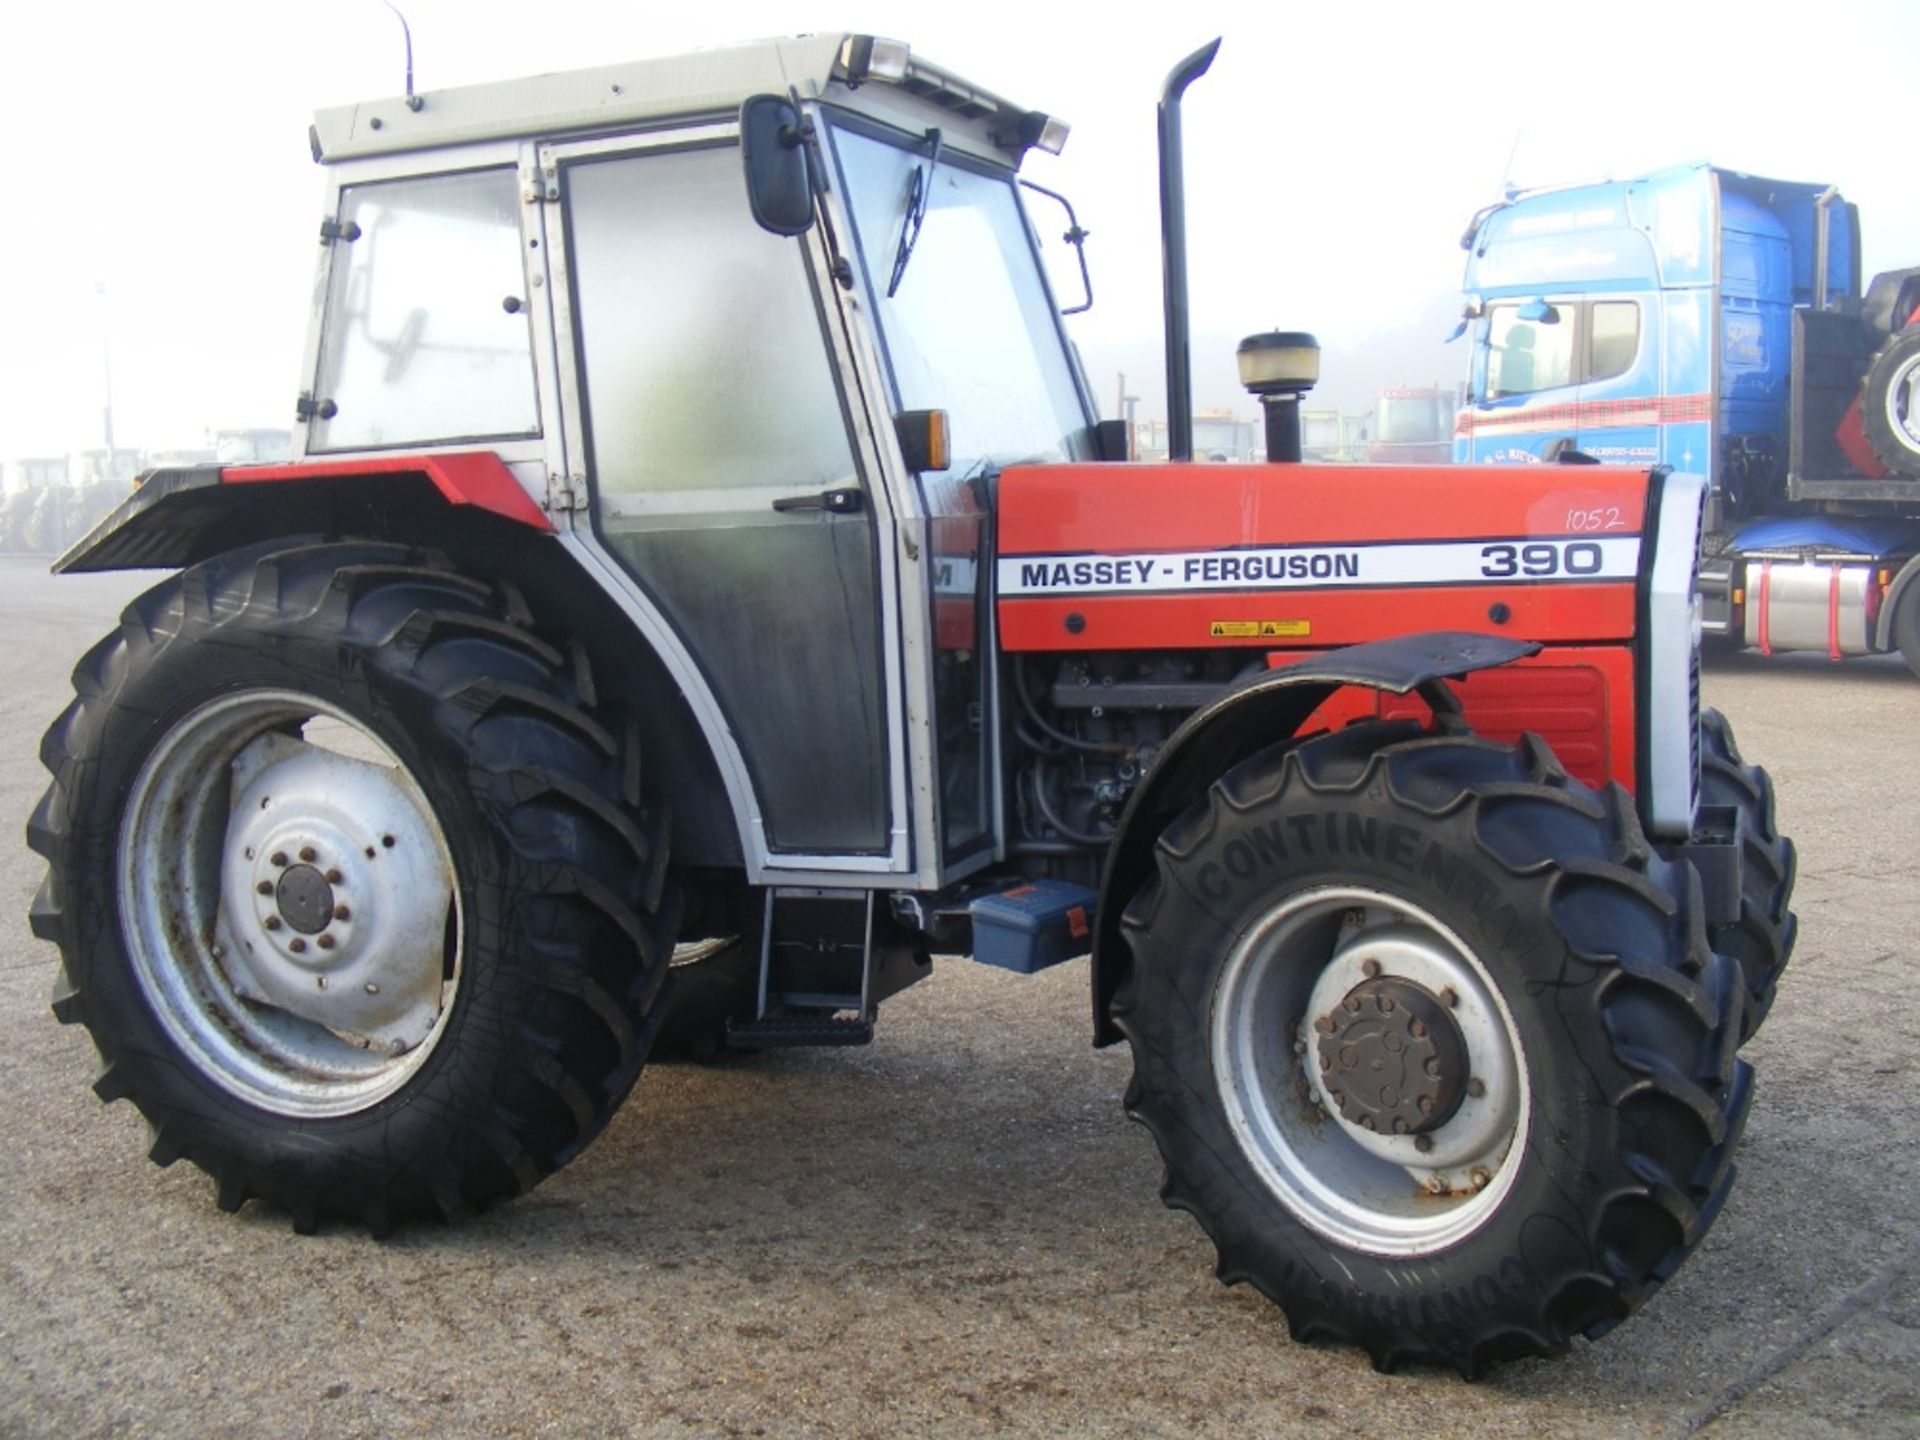 Massey Ferguson 390 4wd Tractor 3274 Hrs. Reg. No. H717 KCS